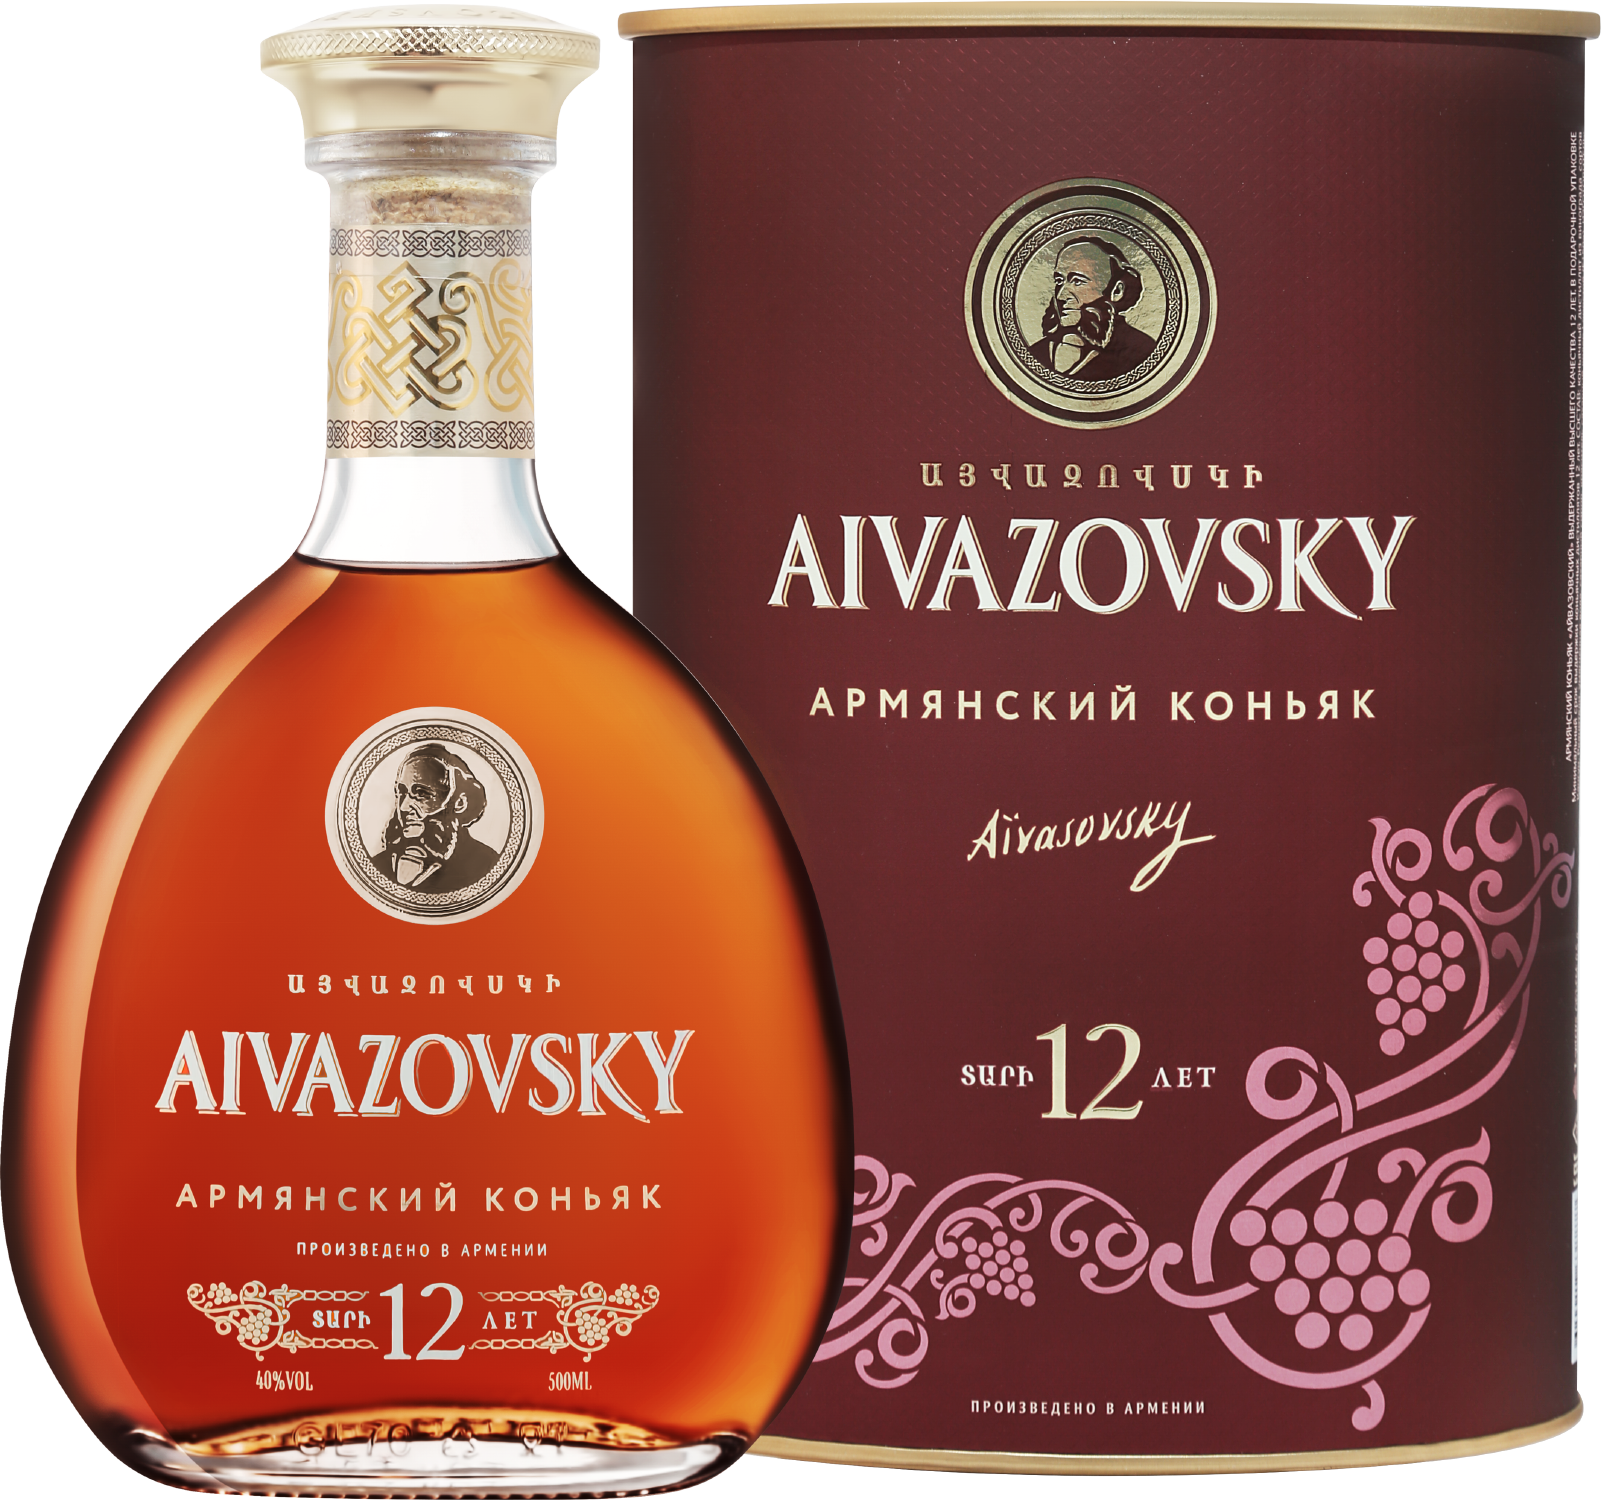 ararat otborny armenian brandy 7 y o gift box Aivazovsky Old Armenian Brandy 12 Y.O. (gift box)